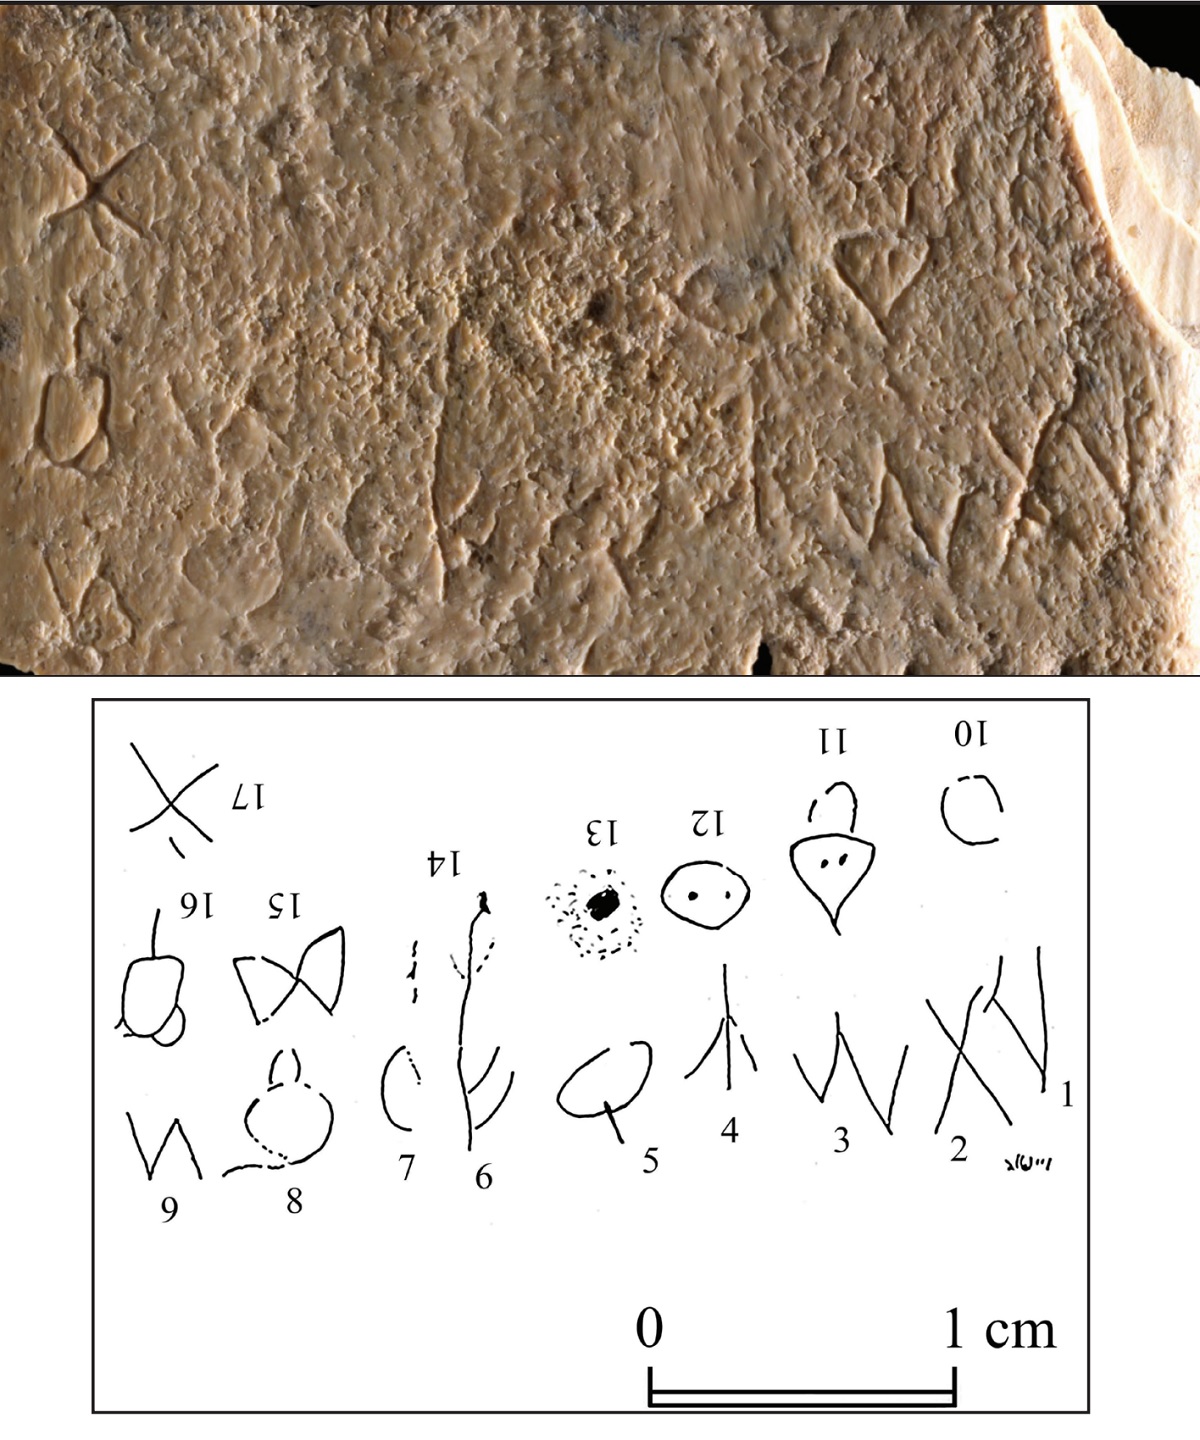 Pequeno pente de 3.700 anos usado para tirar piolho pode conter a mais antiga escrita ocidental